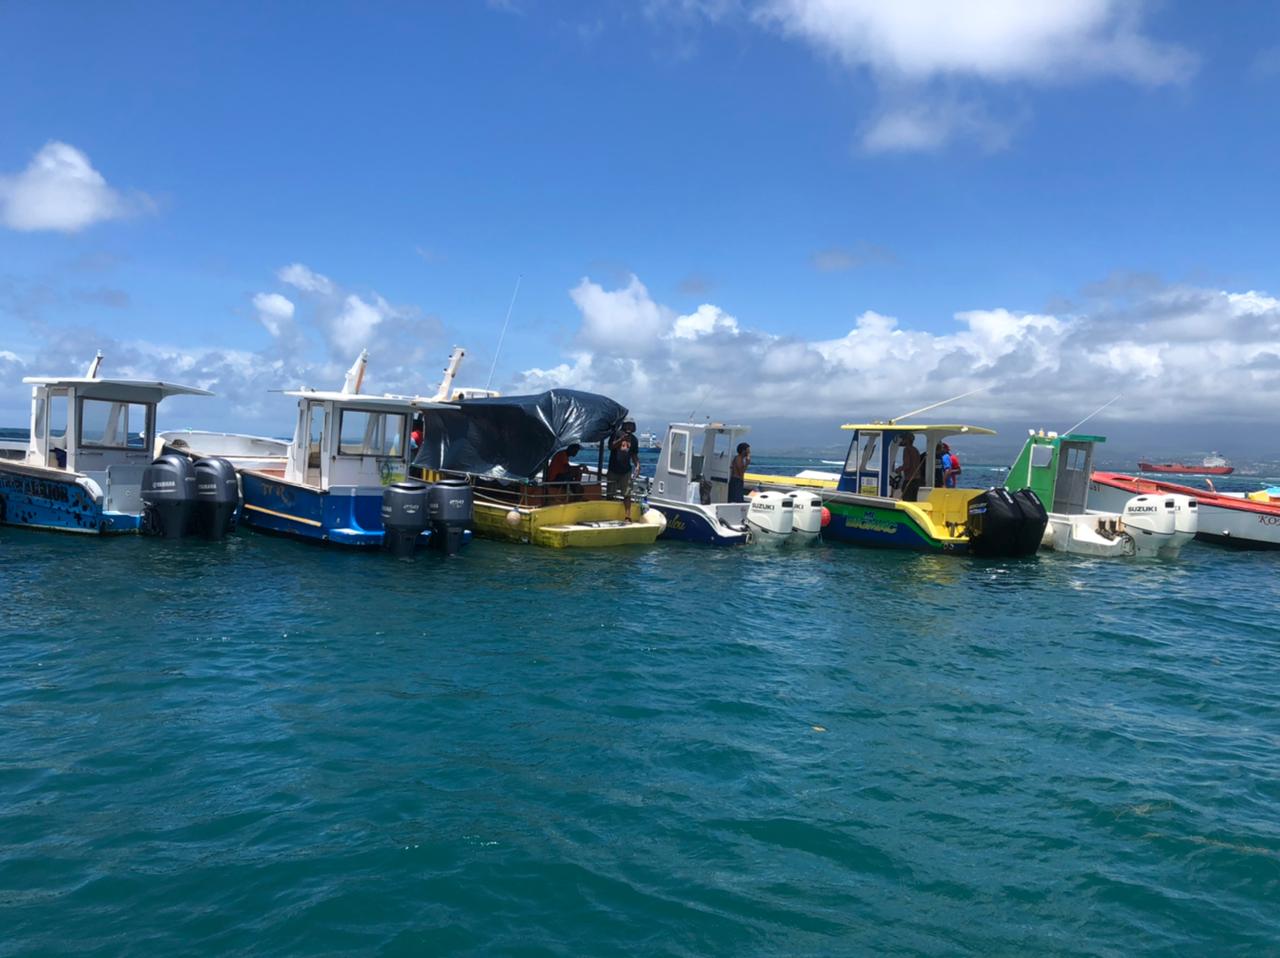     L'Express des Îles à l'arrêt à cause d'une manifestation des marins-pêcheurs de Guadeloupe

